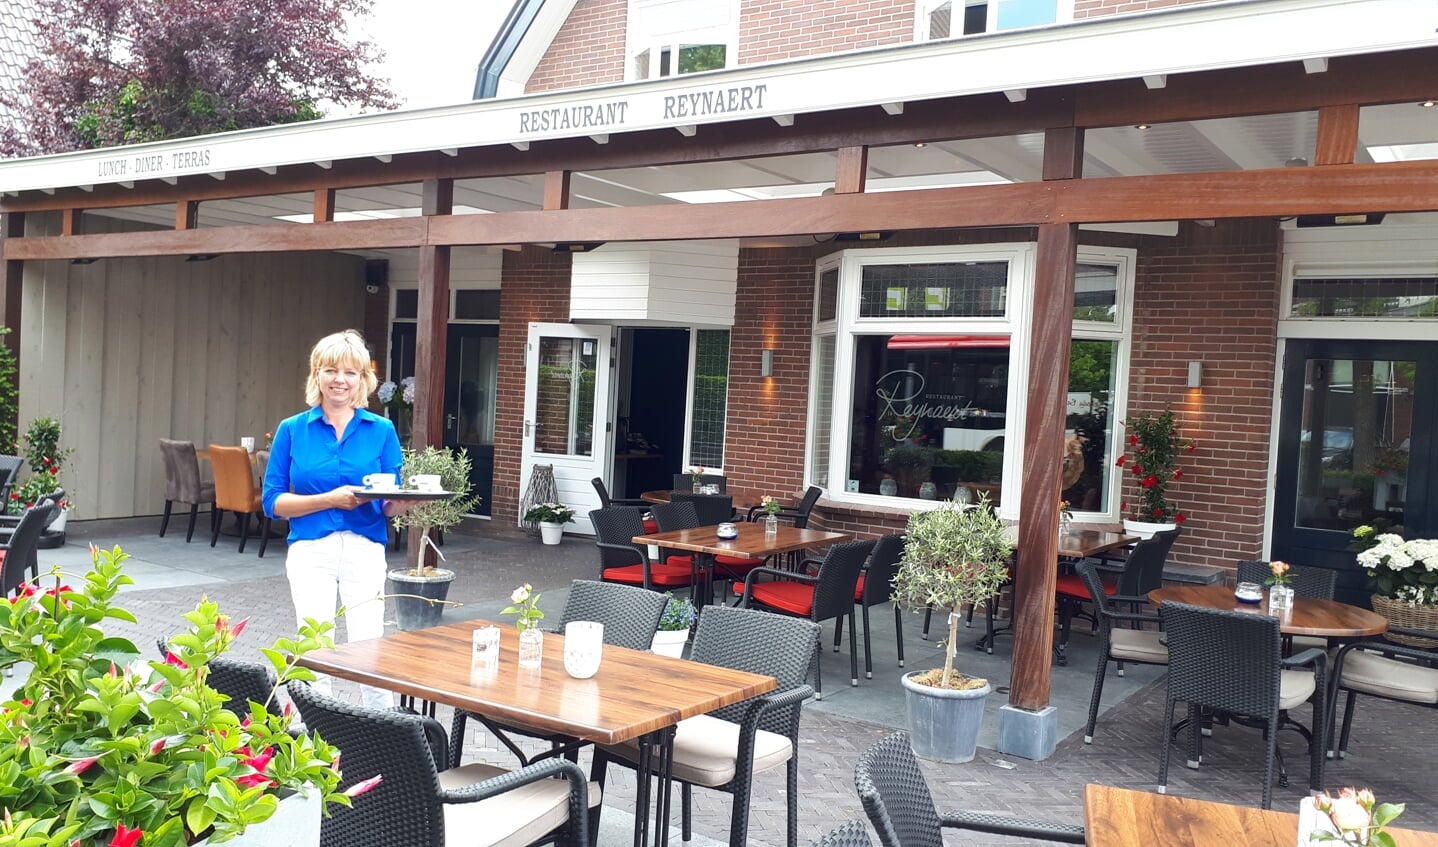 Brigitte Vos verwelkomt de gasten bij Restaurant Reynaert in het centrum van Maarn.